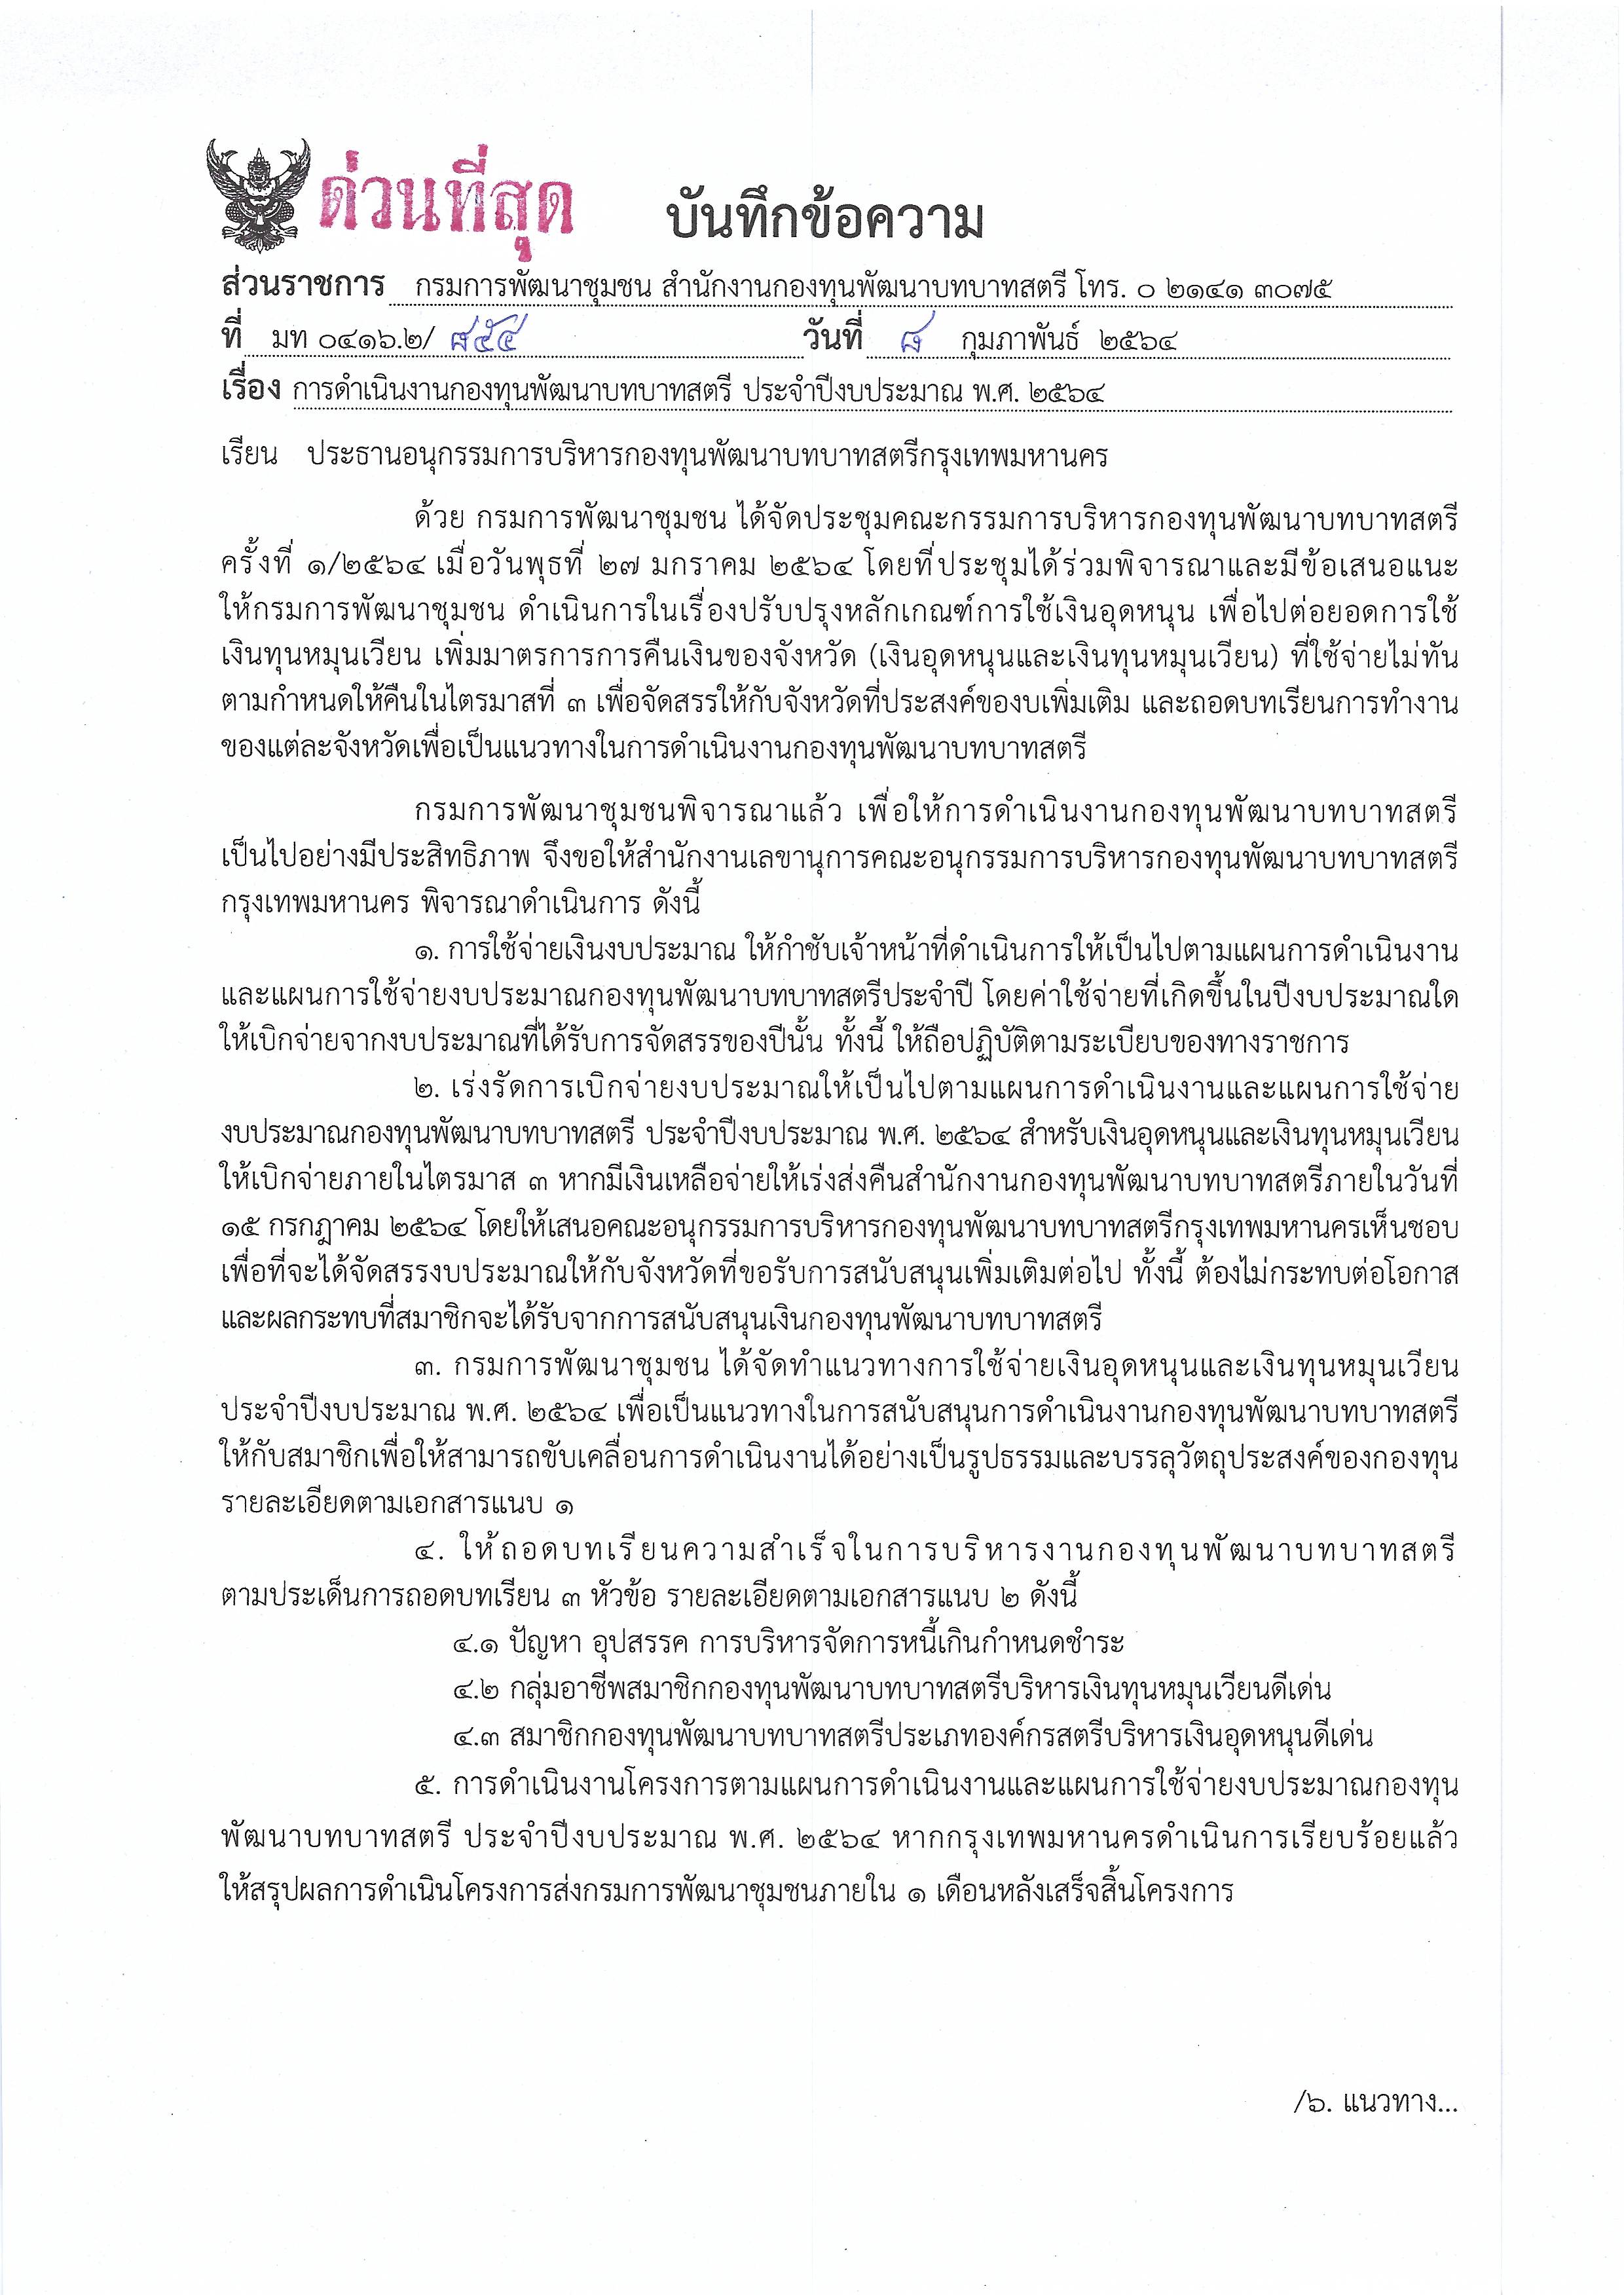 font bangkok Page 1